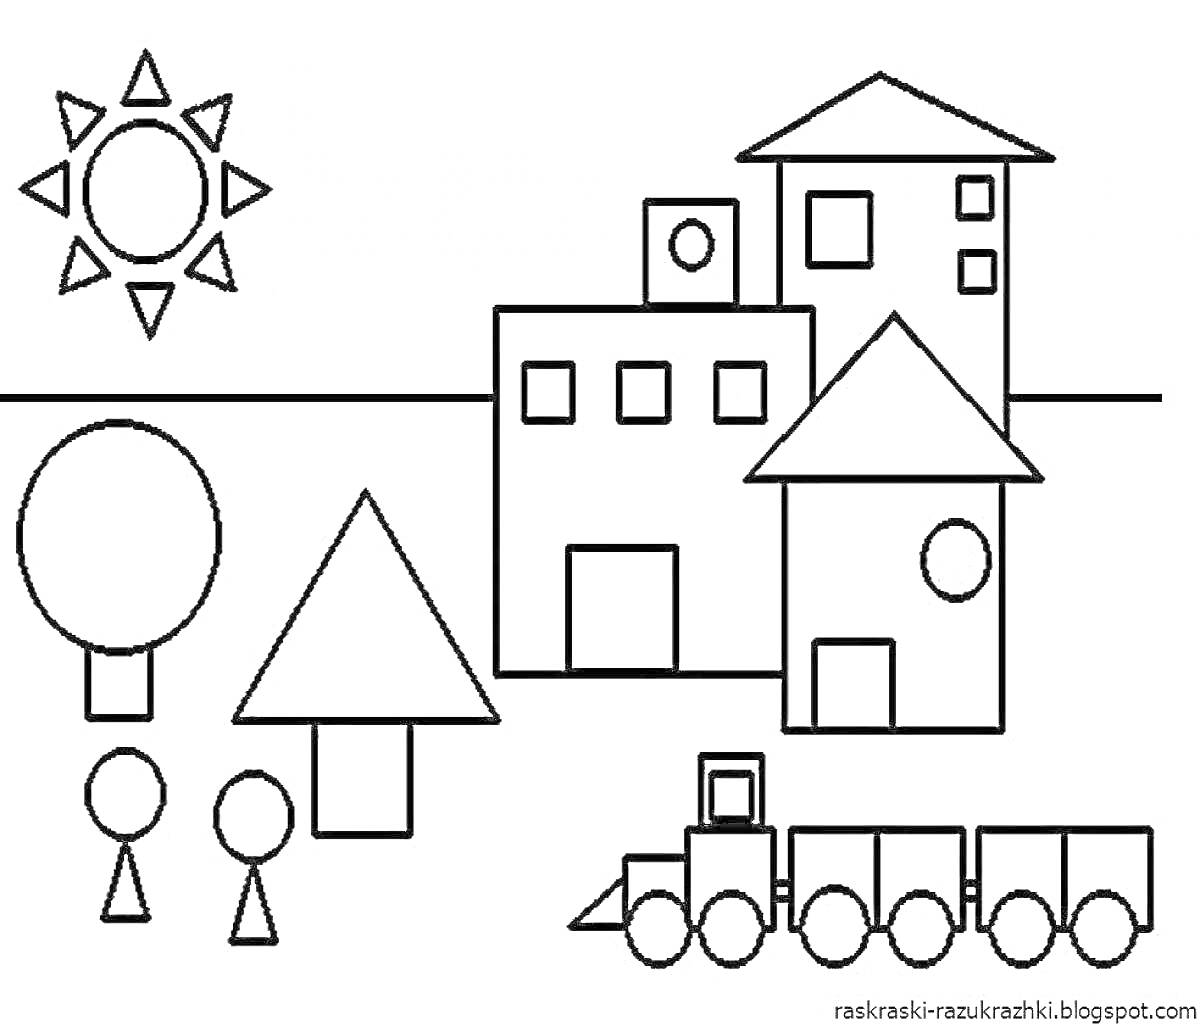 На раскраске изображено: Геометрические фигуры, Солнце, Дом, Поезд, Круг, Квадрат, Треугольник, Деревья, Человек